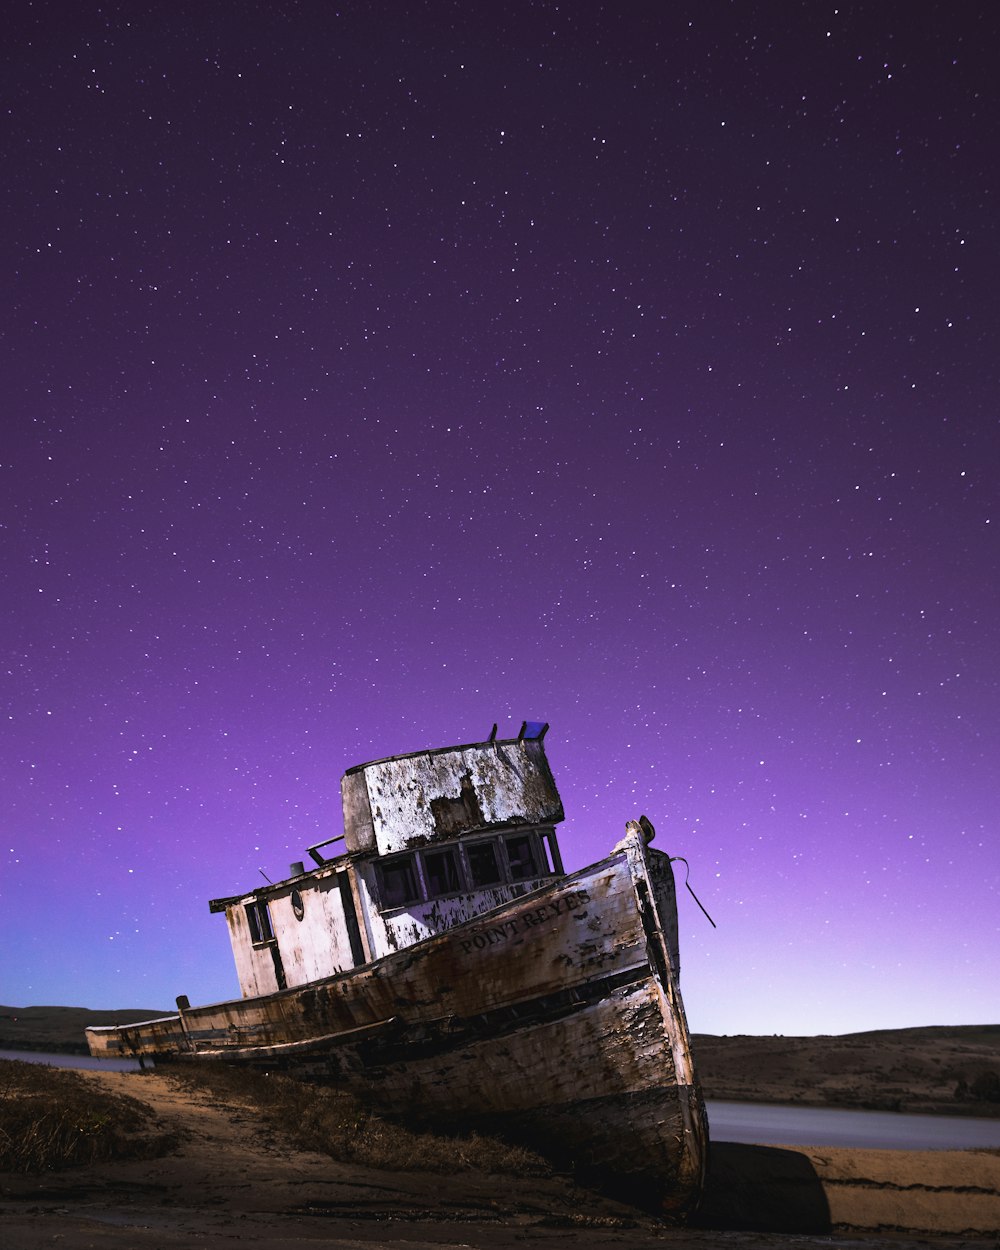 shipwreck under starry night sky